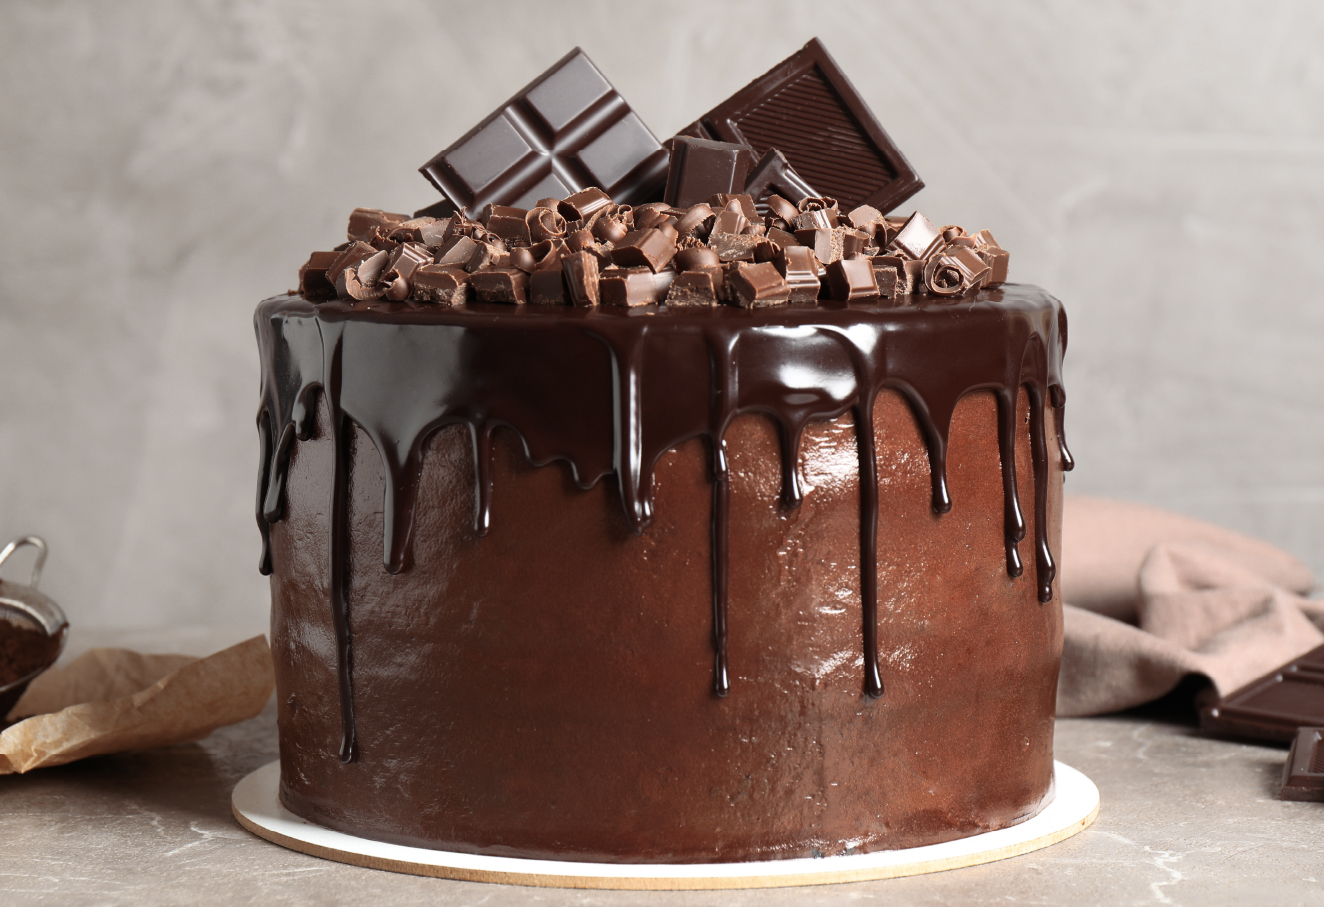 A whole chocolate cake.